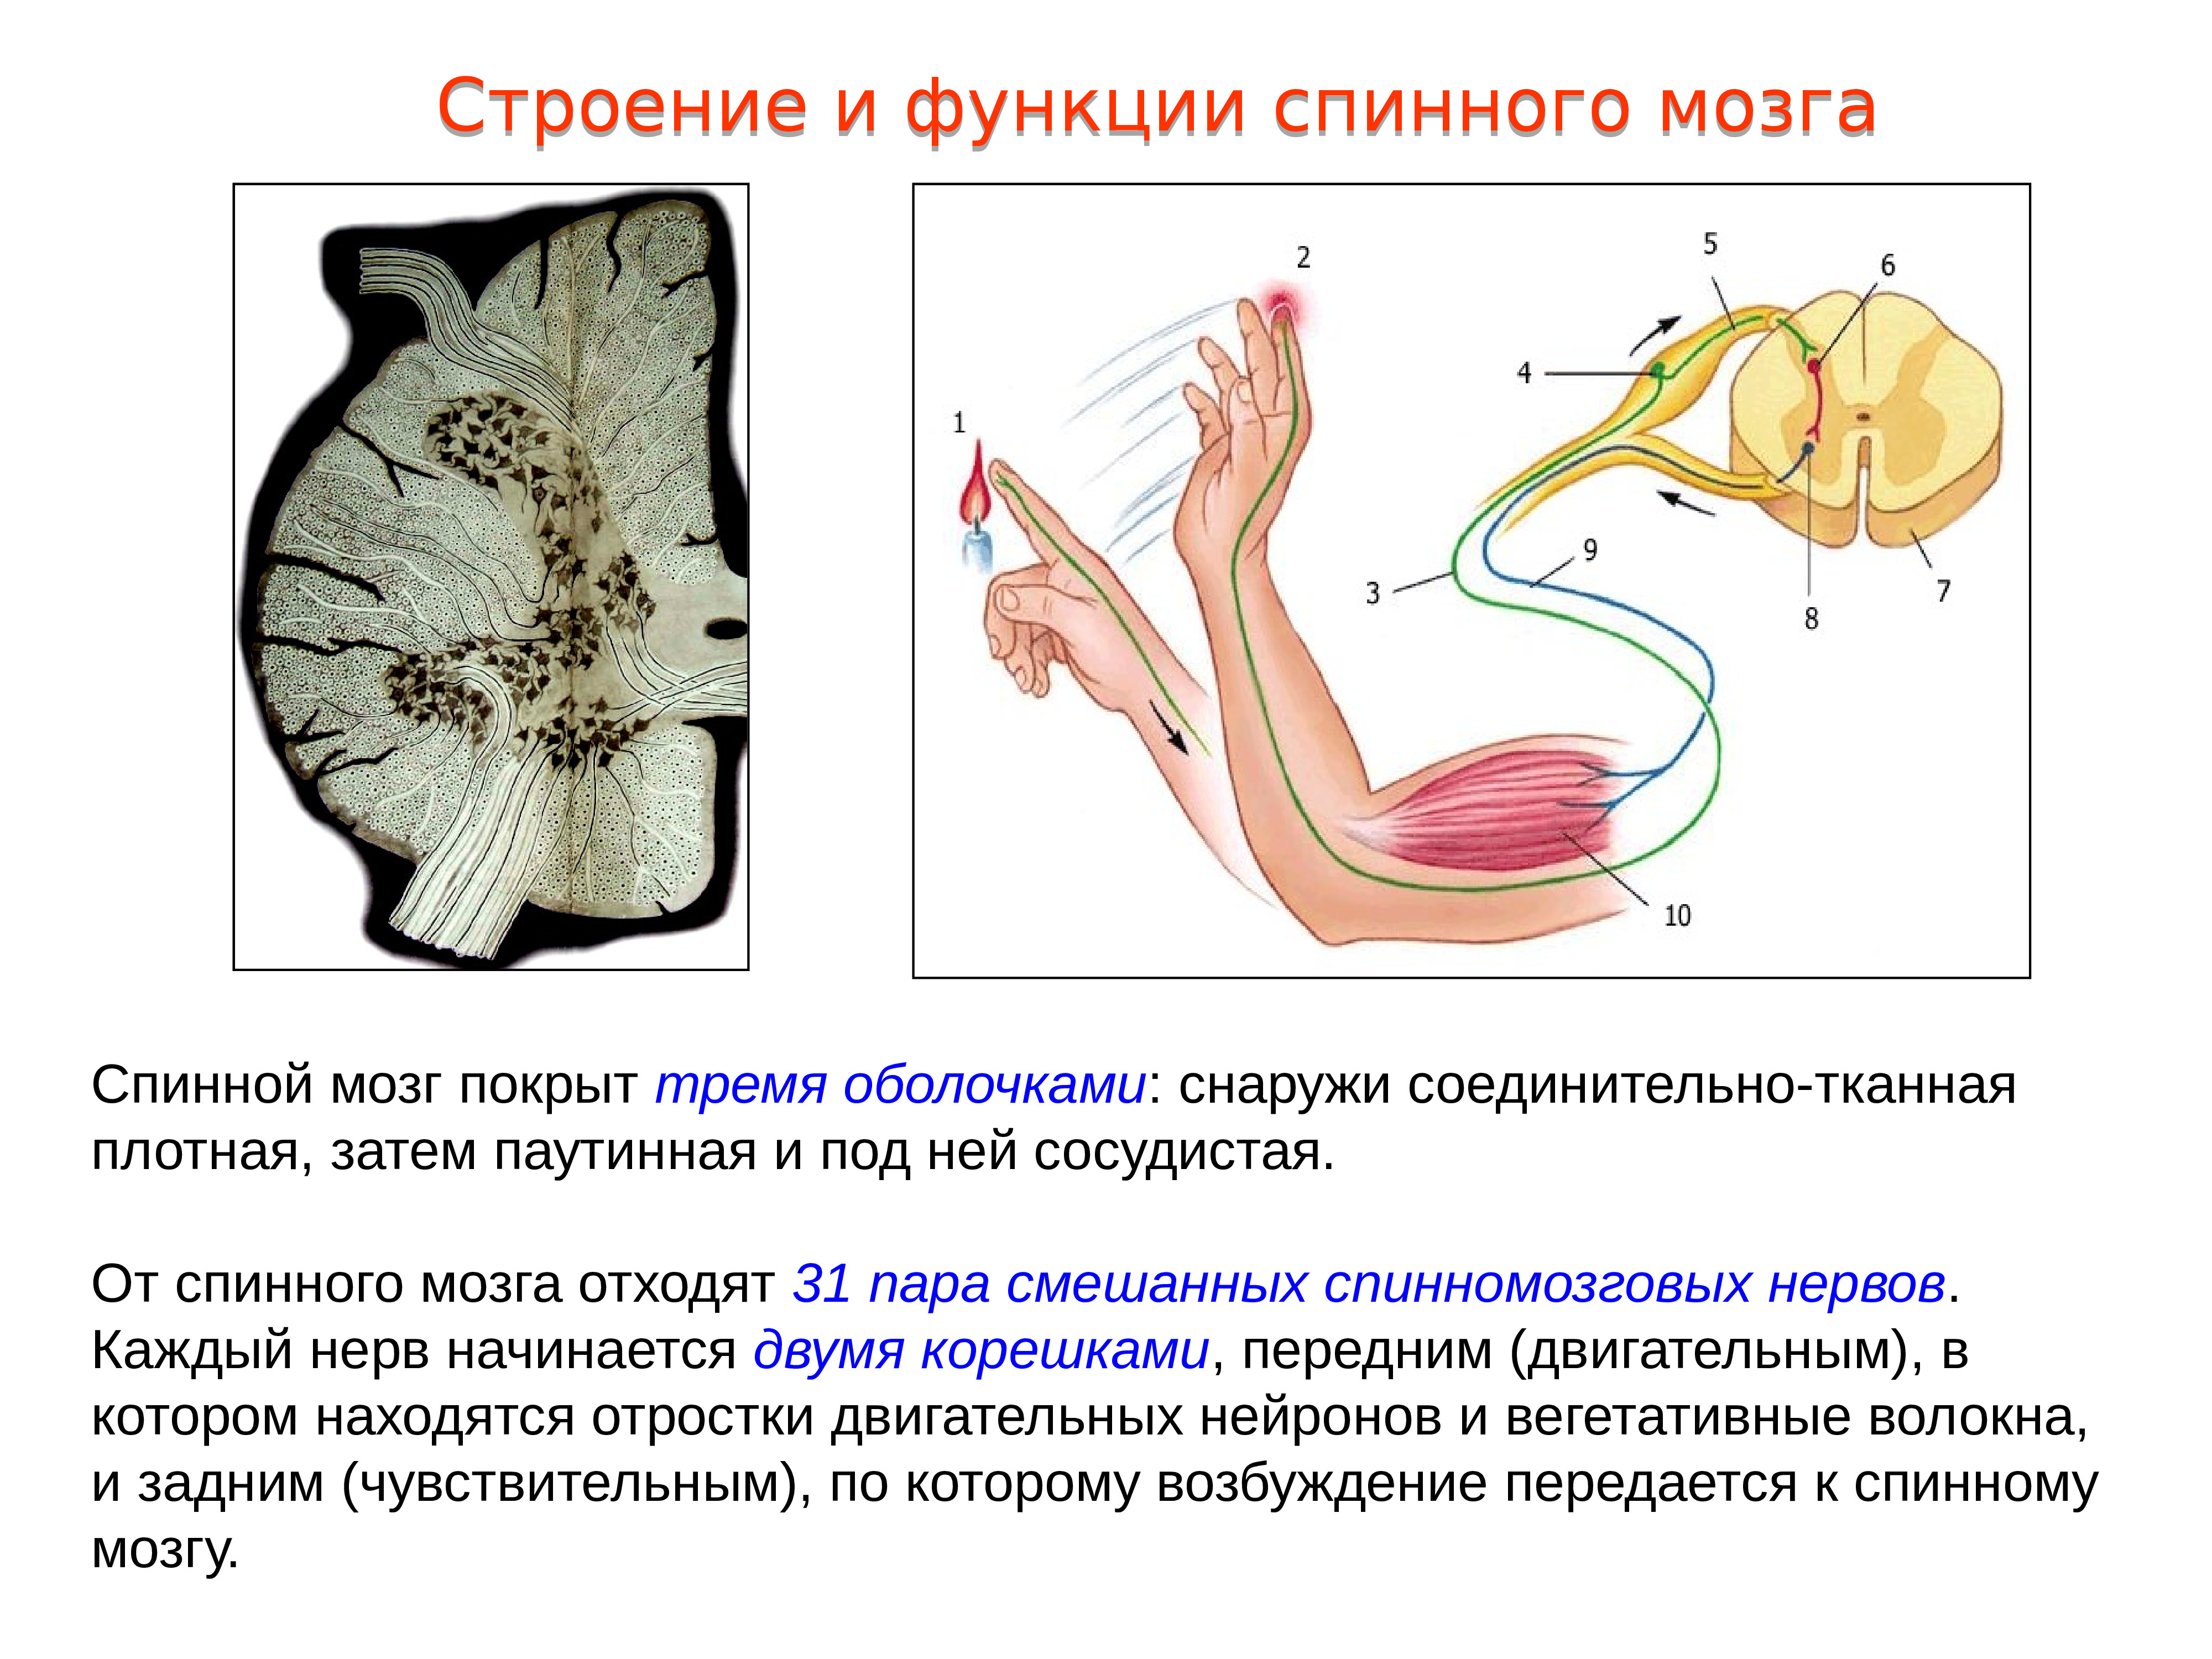 Функции спинномозгового мозга. 1. Строение и функции спинного мозга.. 2. Строение и функции спинного мозга. 16. Строение и функции спинного мозга. Охарактеризуйте строение и функции спинного мозга.